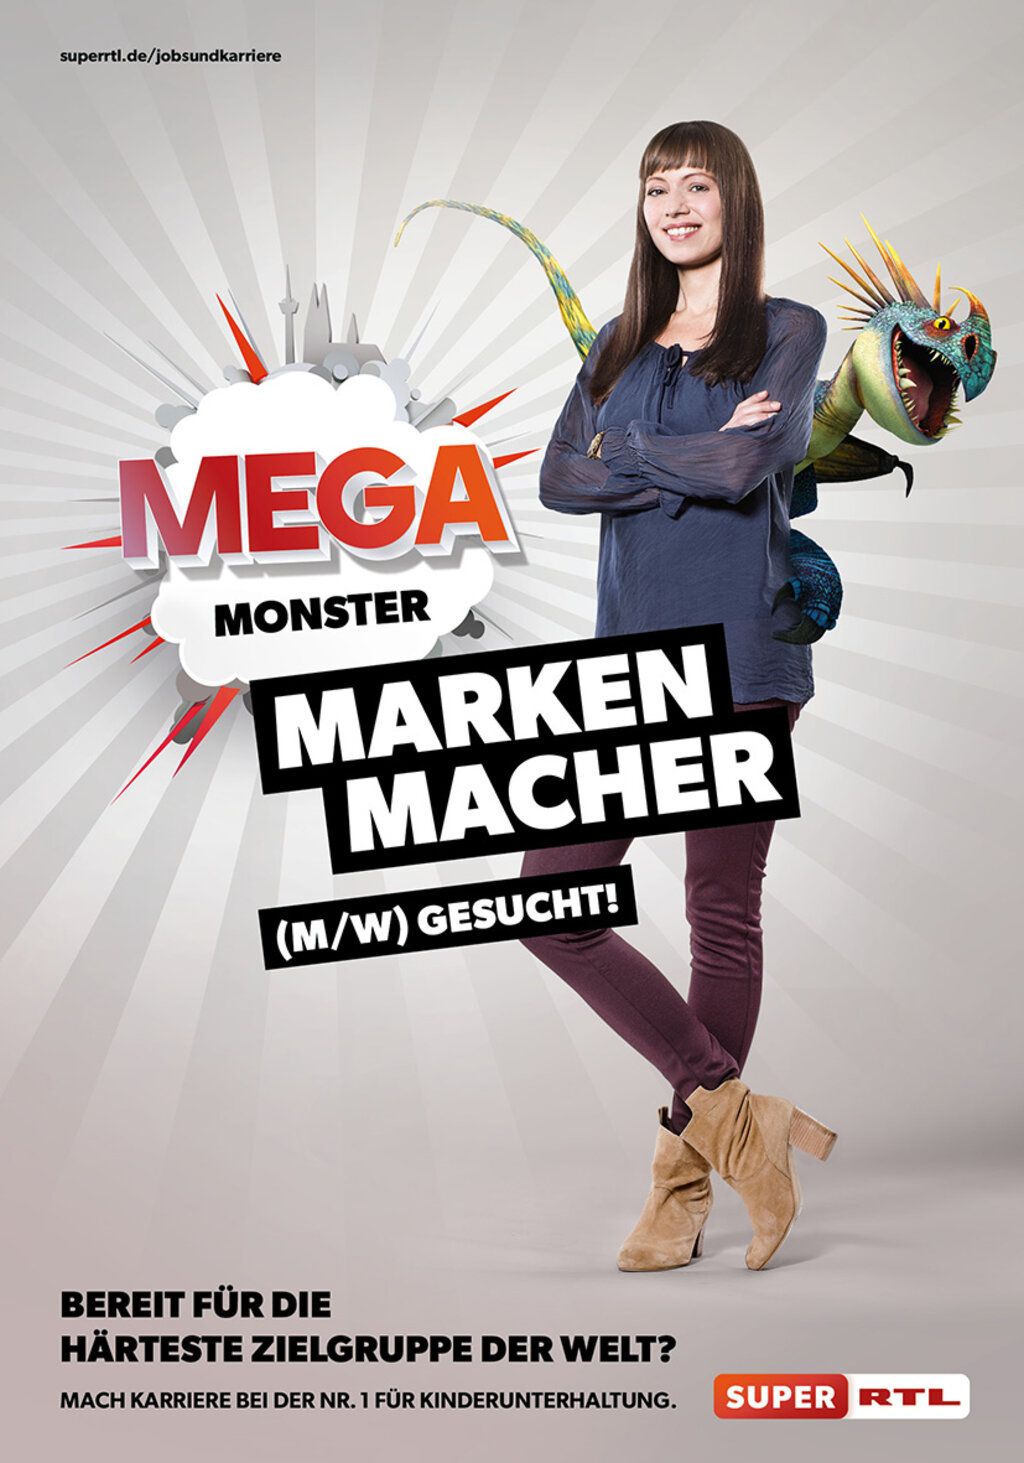 Junge Frau mit langen Haaren wirbt für einen Job bei Super RTL. Text: Mega-Monster-Marken-Macher.